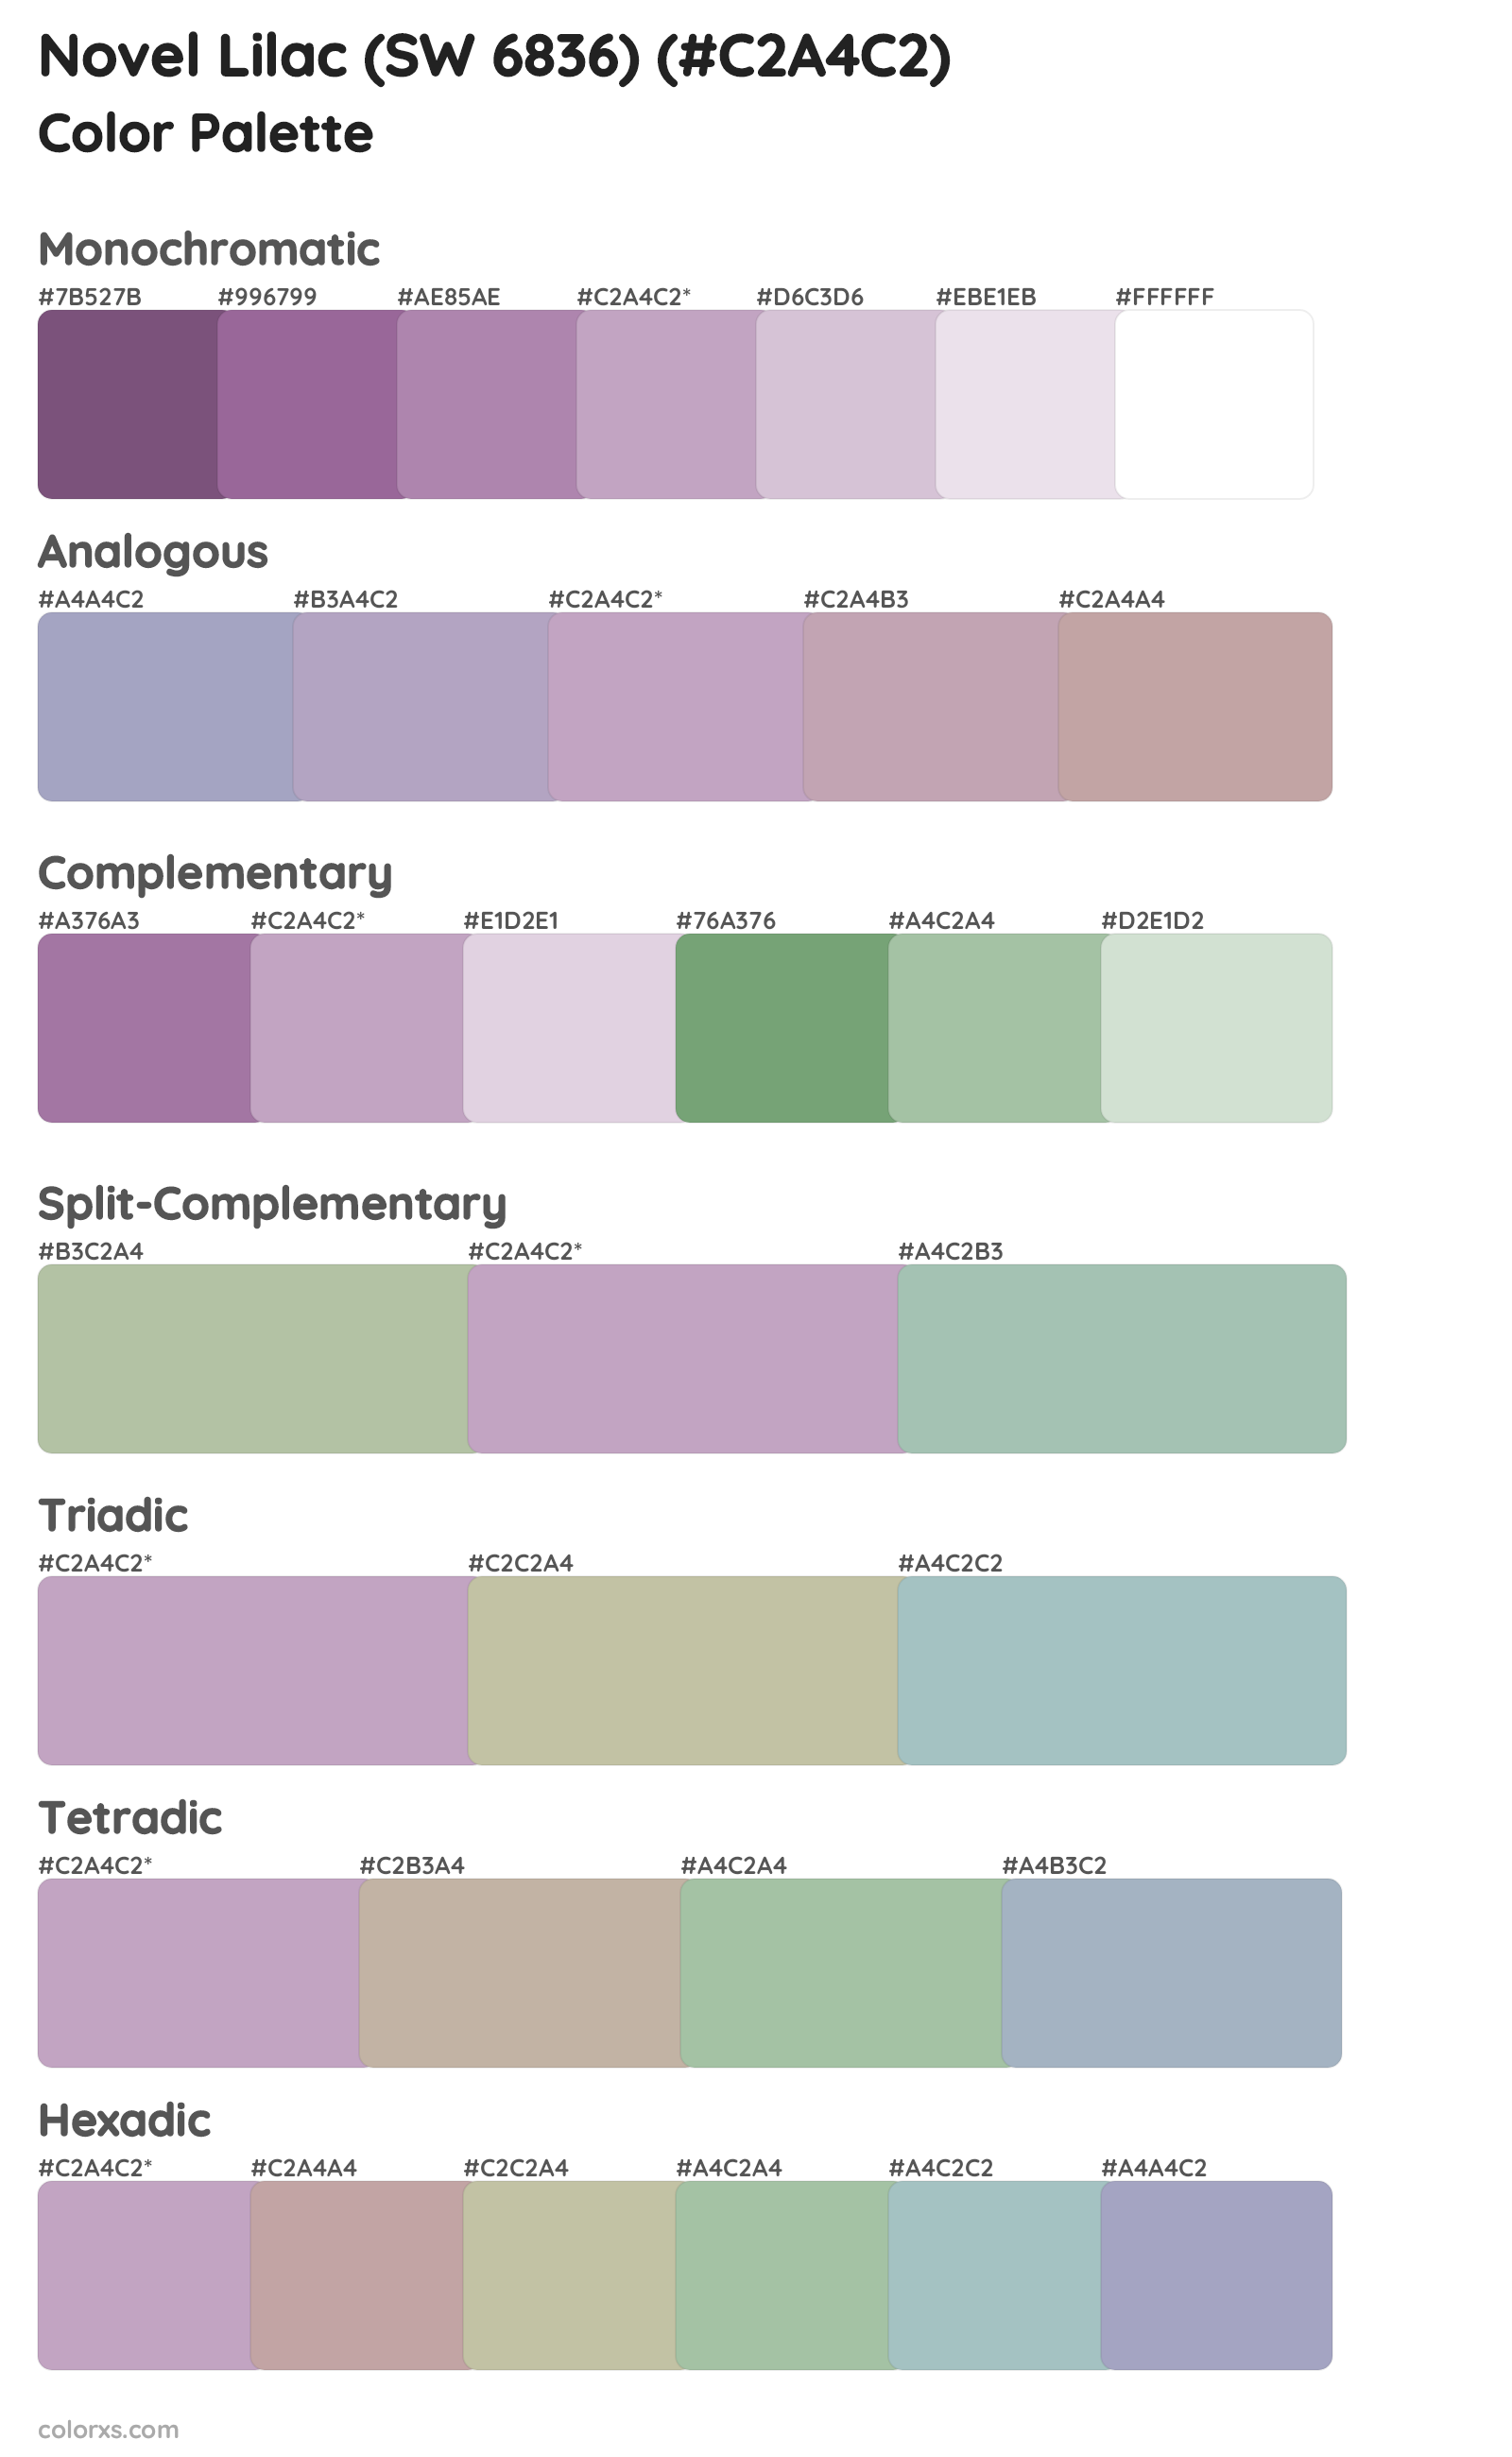 Novel Lilac (SW 6836) Color Scheme Palettes